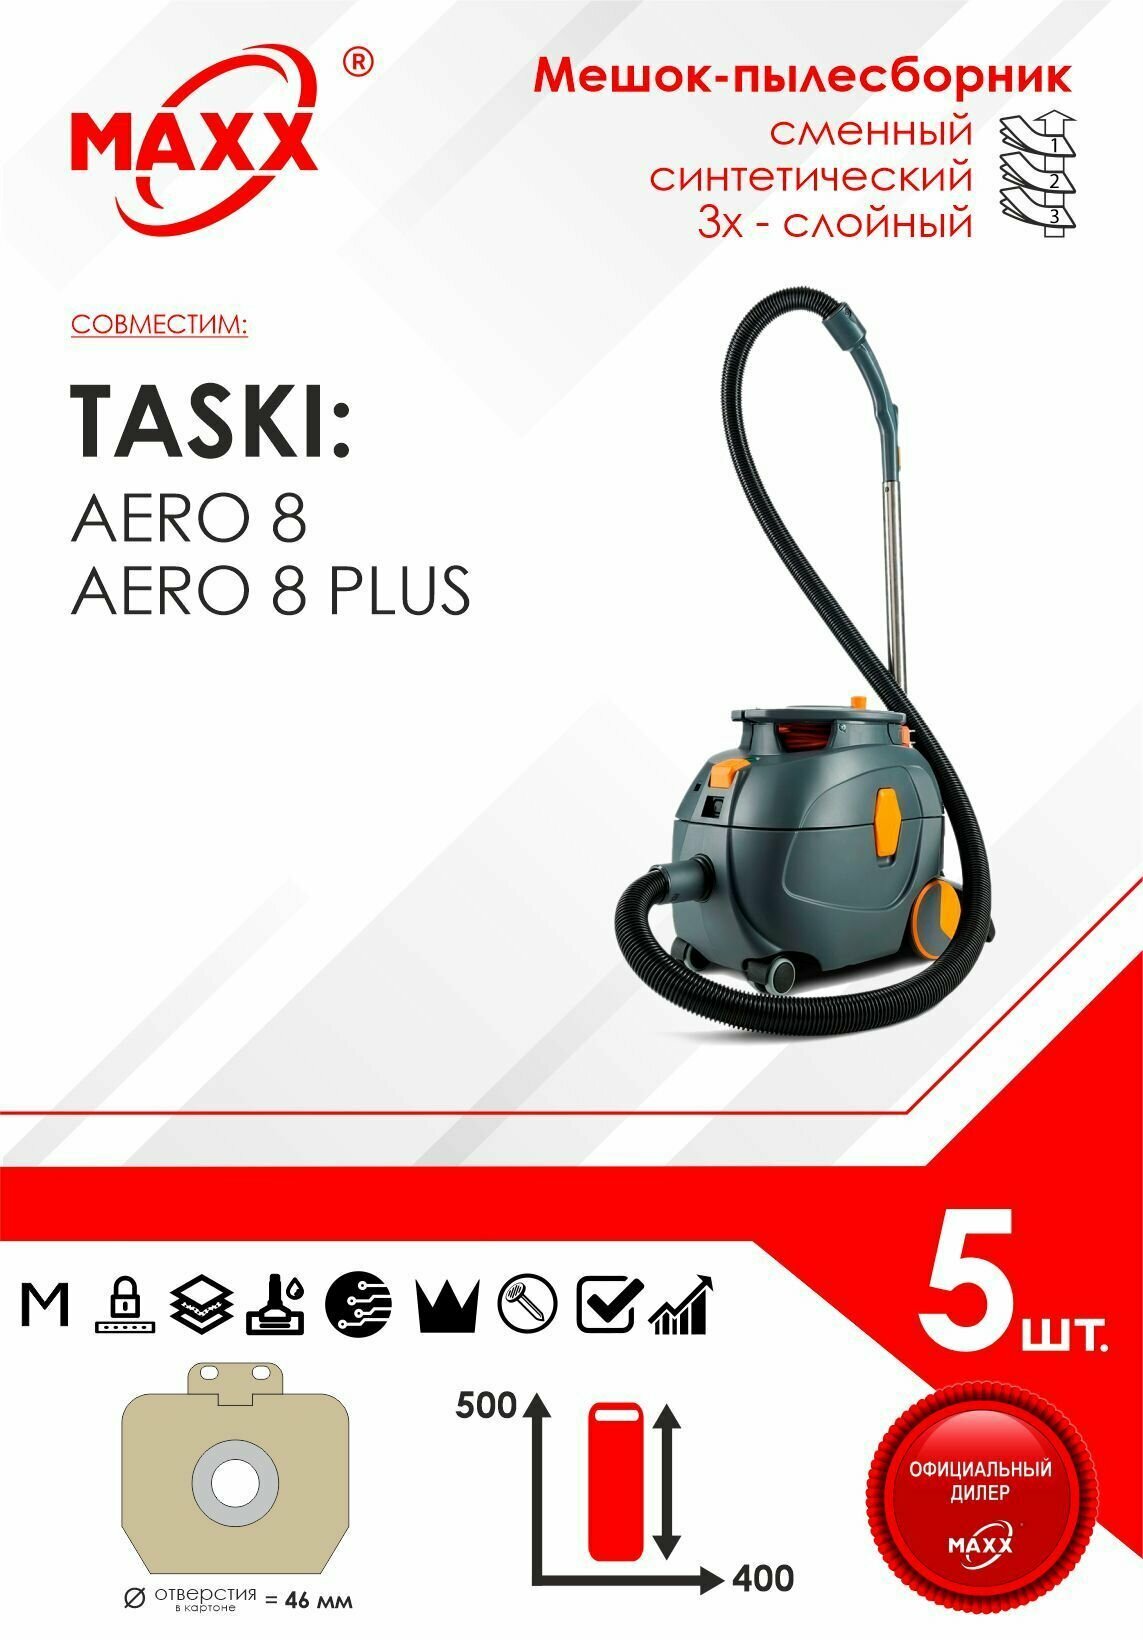 Мешок - пылесборник 5 шт. для пылесоса TASKI Aero 8 / 8 Plus, Diversey